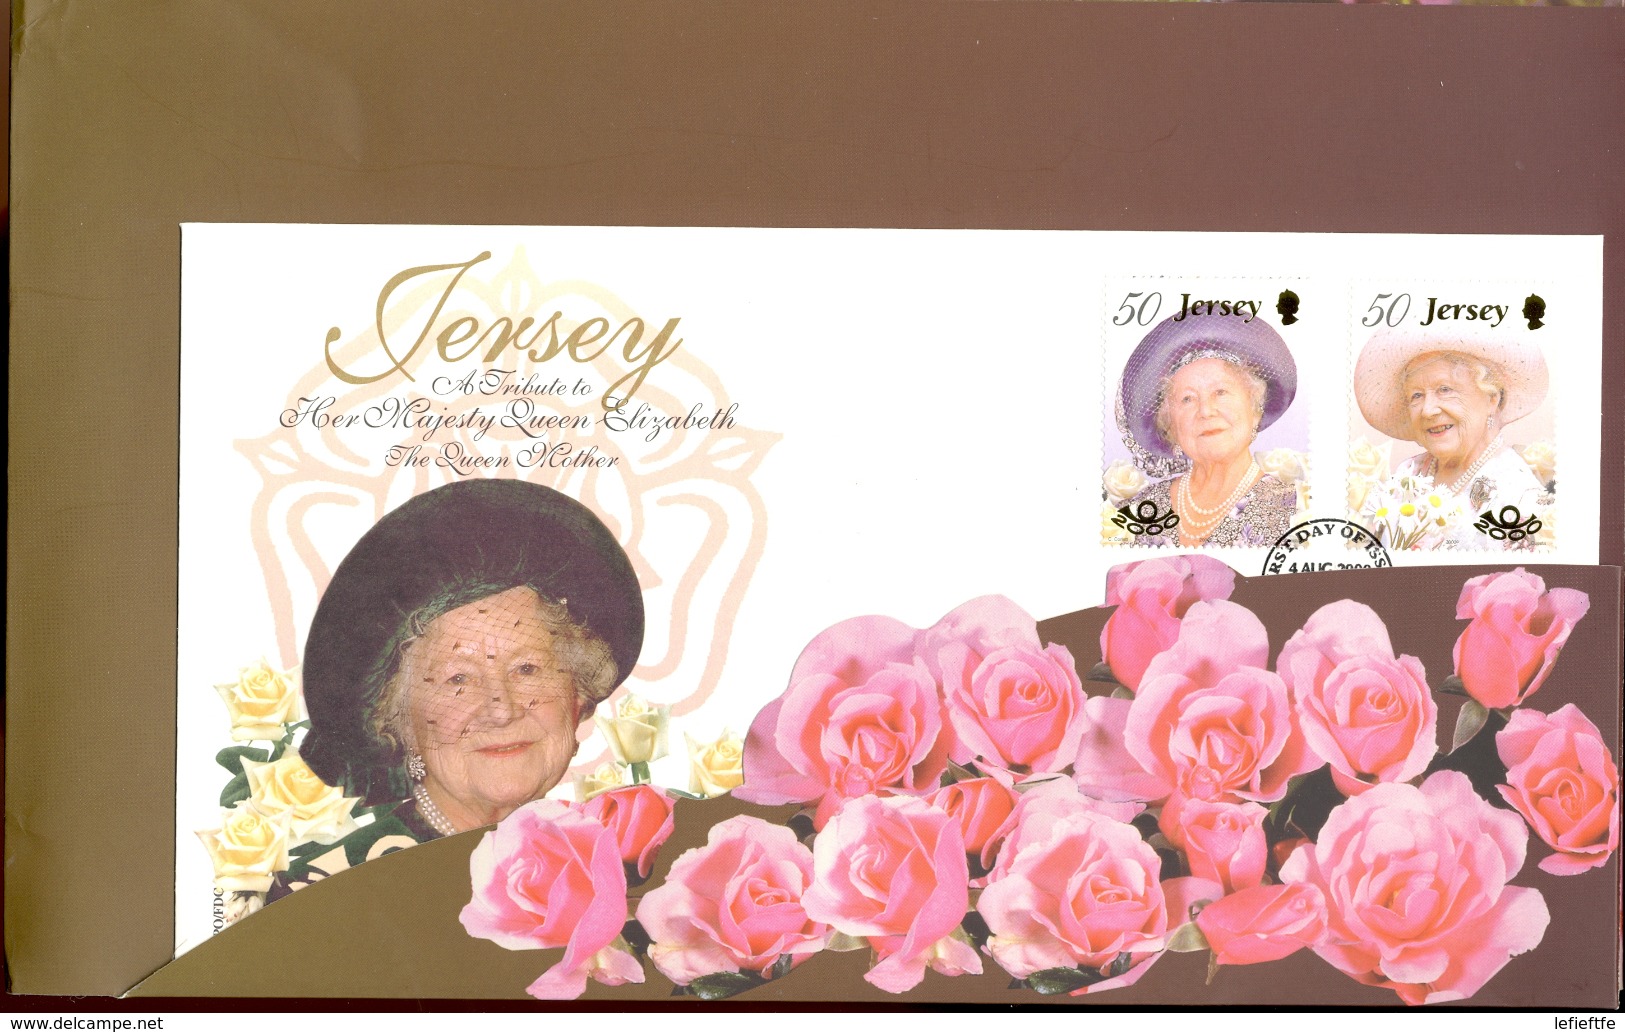 JERSEY - 2000 - Yt 948 et 949 - Centenaire de la Reine Mère Elizabeth - En pack de présentation richement décoré